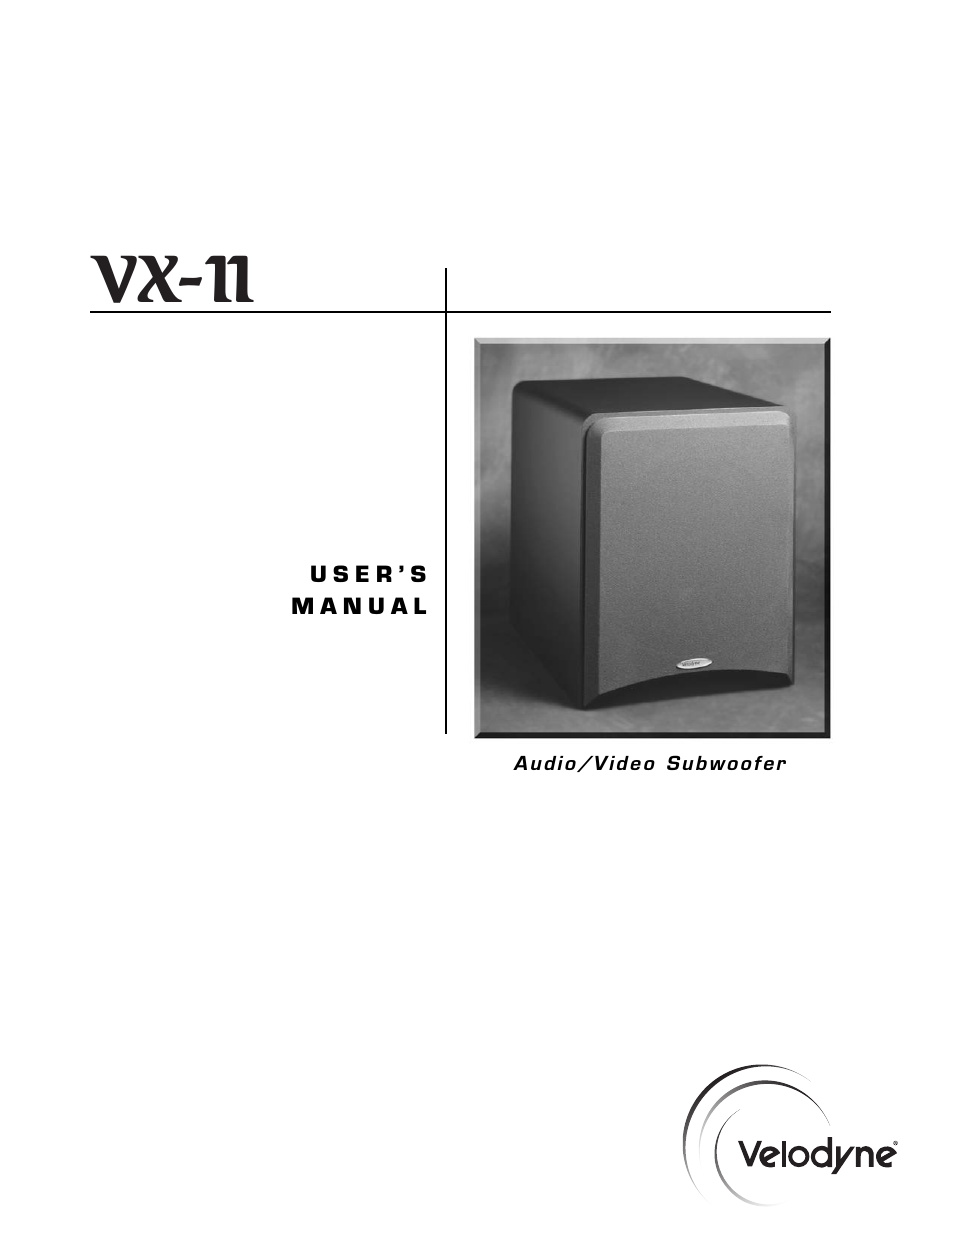 VX-11